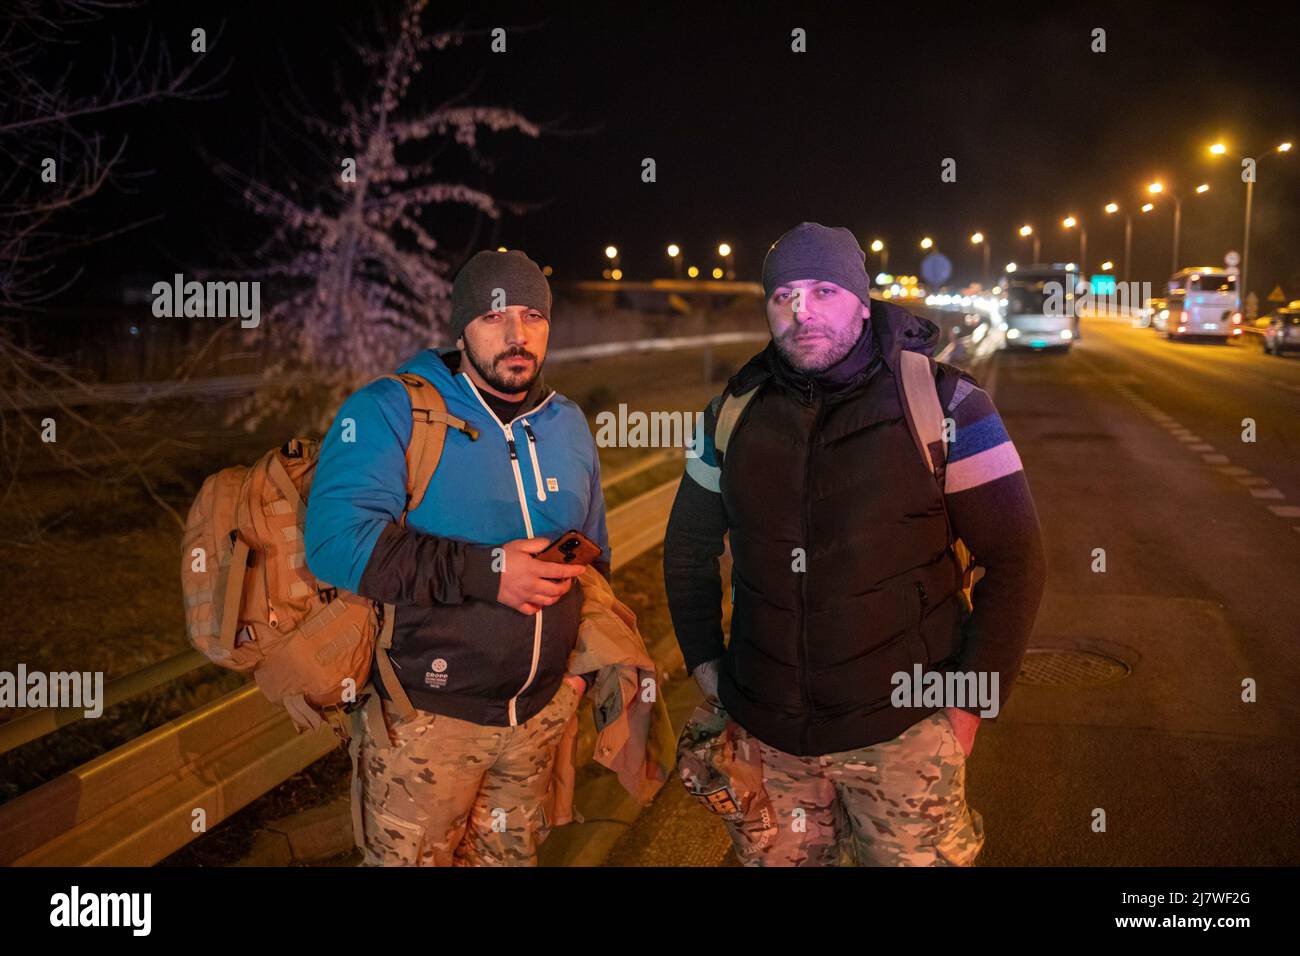 Simon Becker / Le Pictorium - ukrainische Flüchtlinge an der polnischen Grenze - 5/3/2022 - Polen / Hrebene - zwei georgische Männer warten auf die Überquerung nach Großbritannien Stockfoto